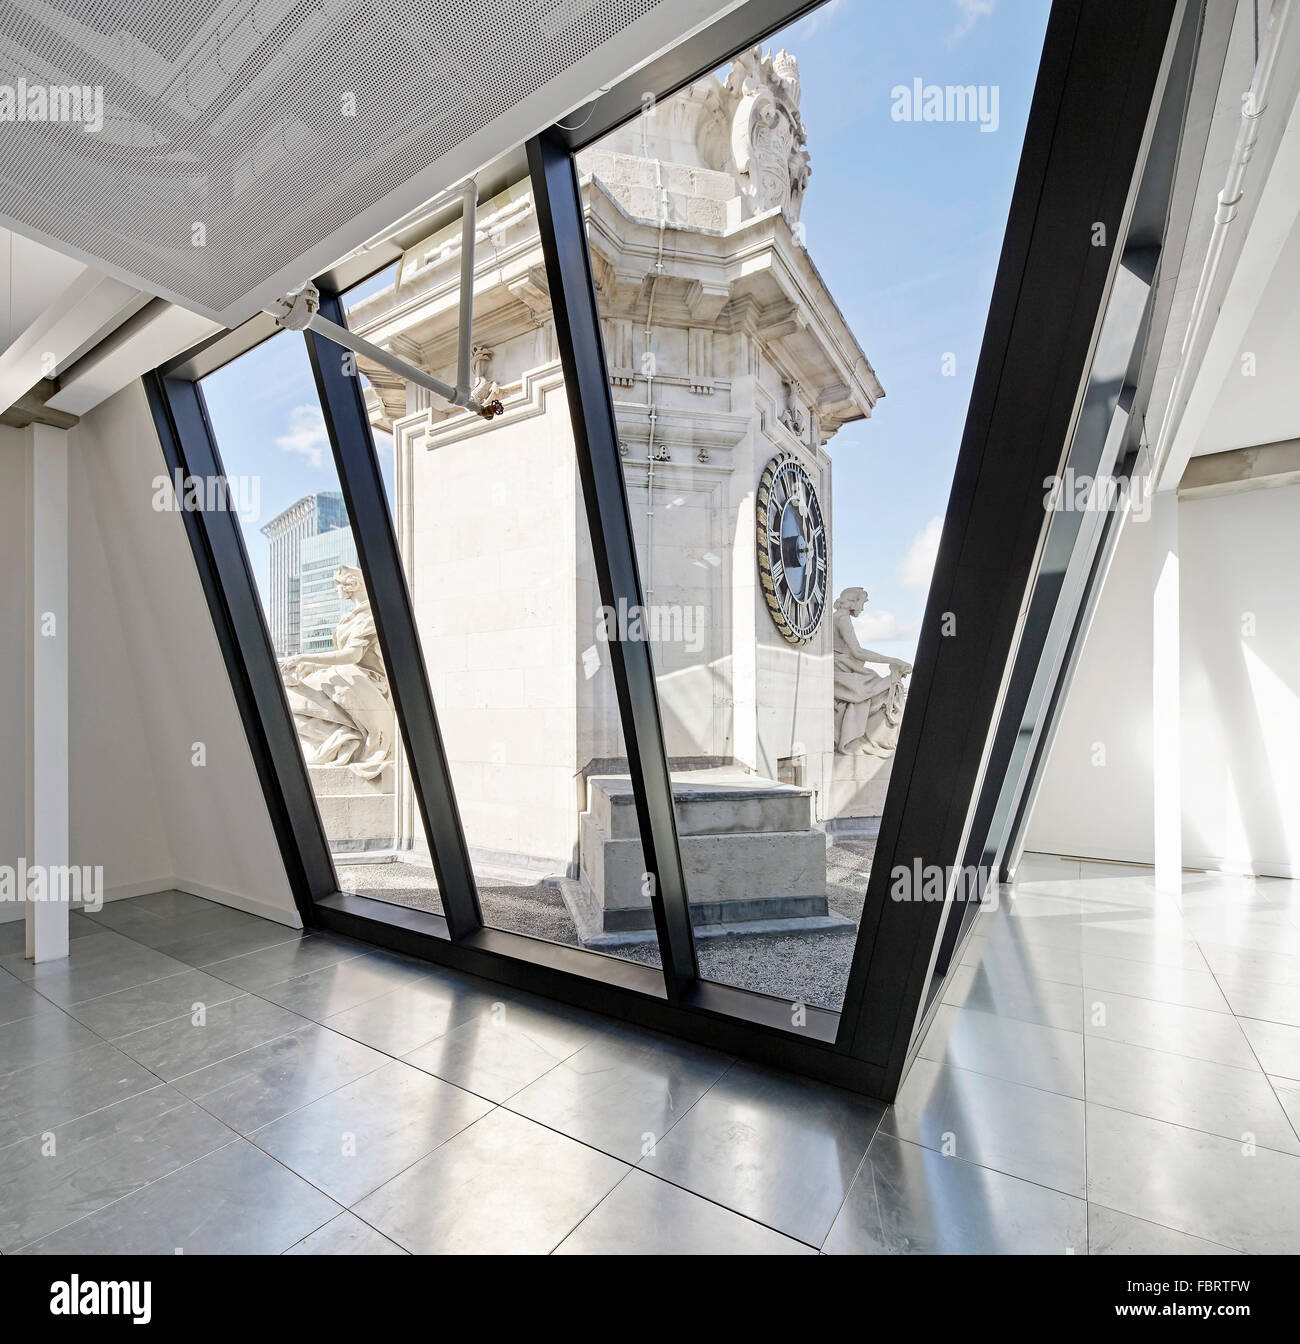 Vue de la fenêtre vers la tour historique. L'Alphabeta Building, Londres, Royaume-Uni. Architecte : Rhône, 2015. Banque D'Images